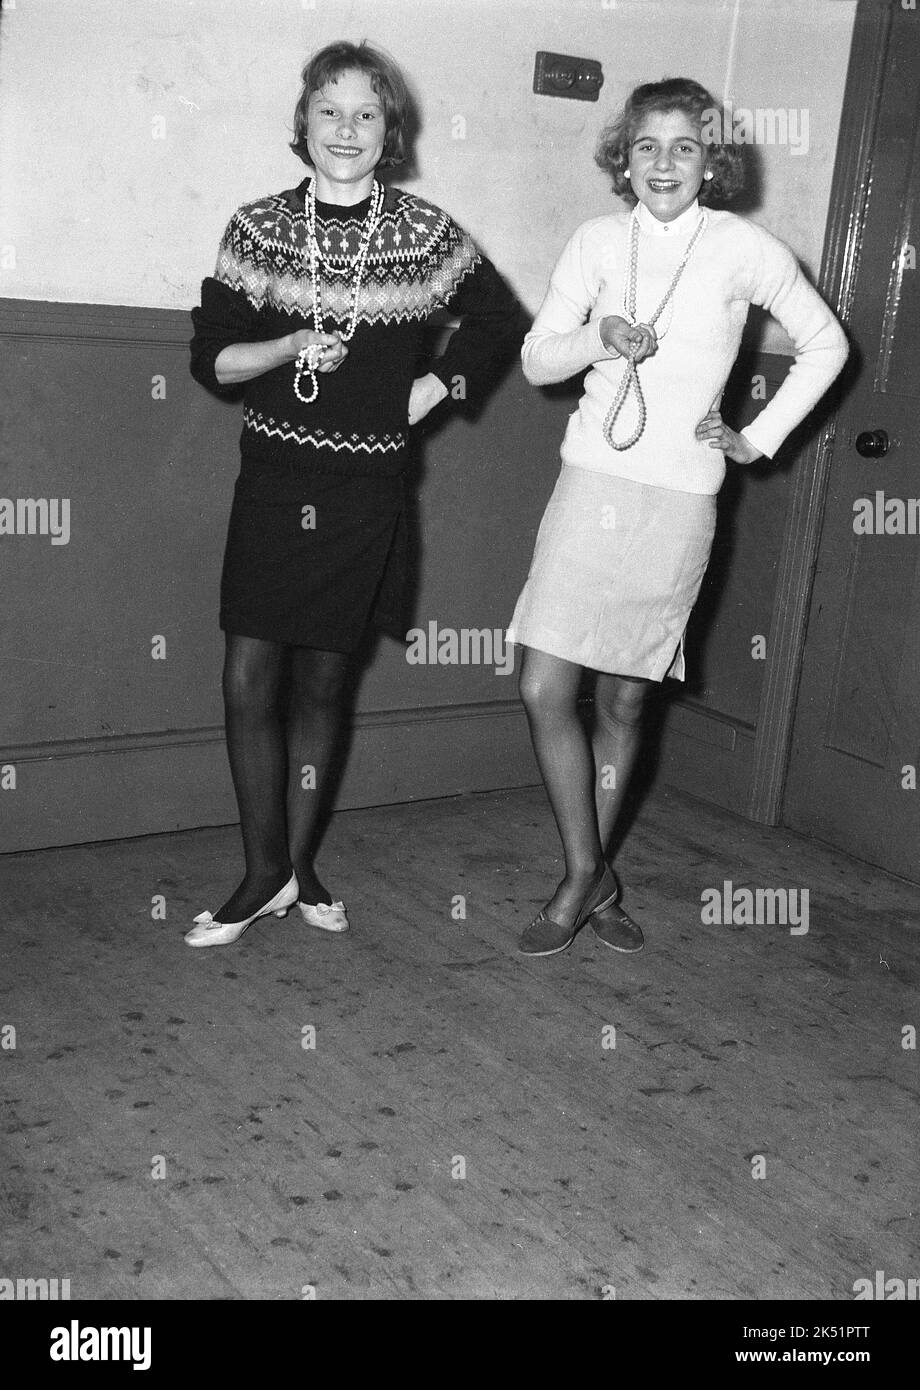 1961, storico, due ragazze adolescenti che appaiono nel carnevale del giorno di maggio, Leeds, Inghilterra, Regno Unito in piedi per una foto nei loro abiti e perle. Foto Stock